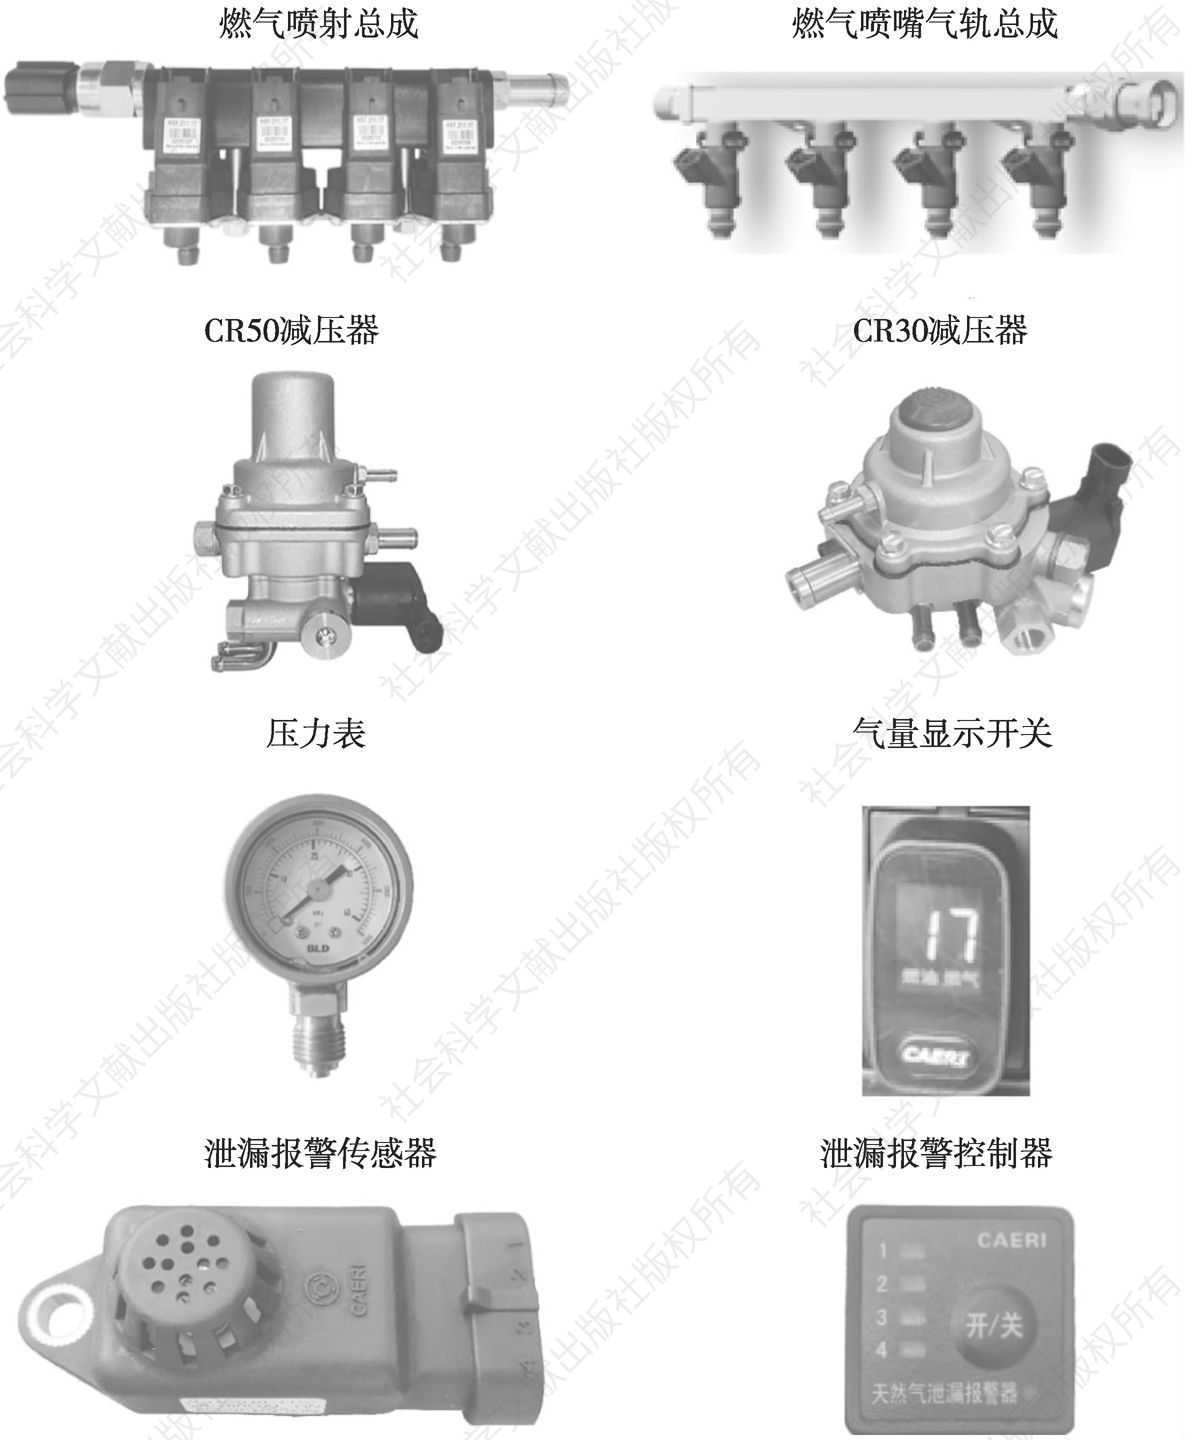 图5 燃气系统关键零部件产品系列